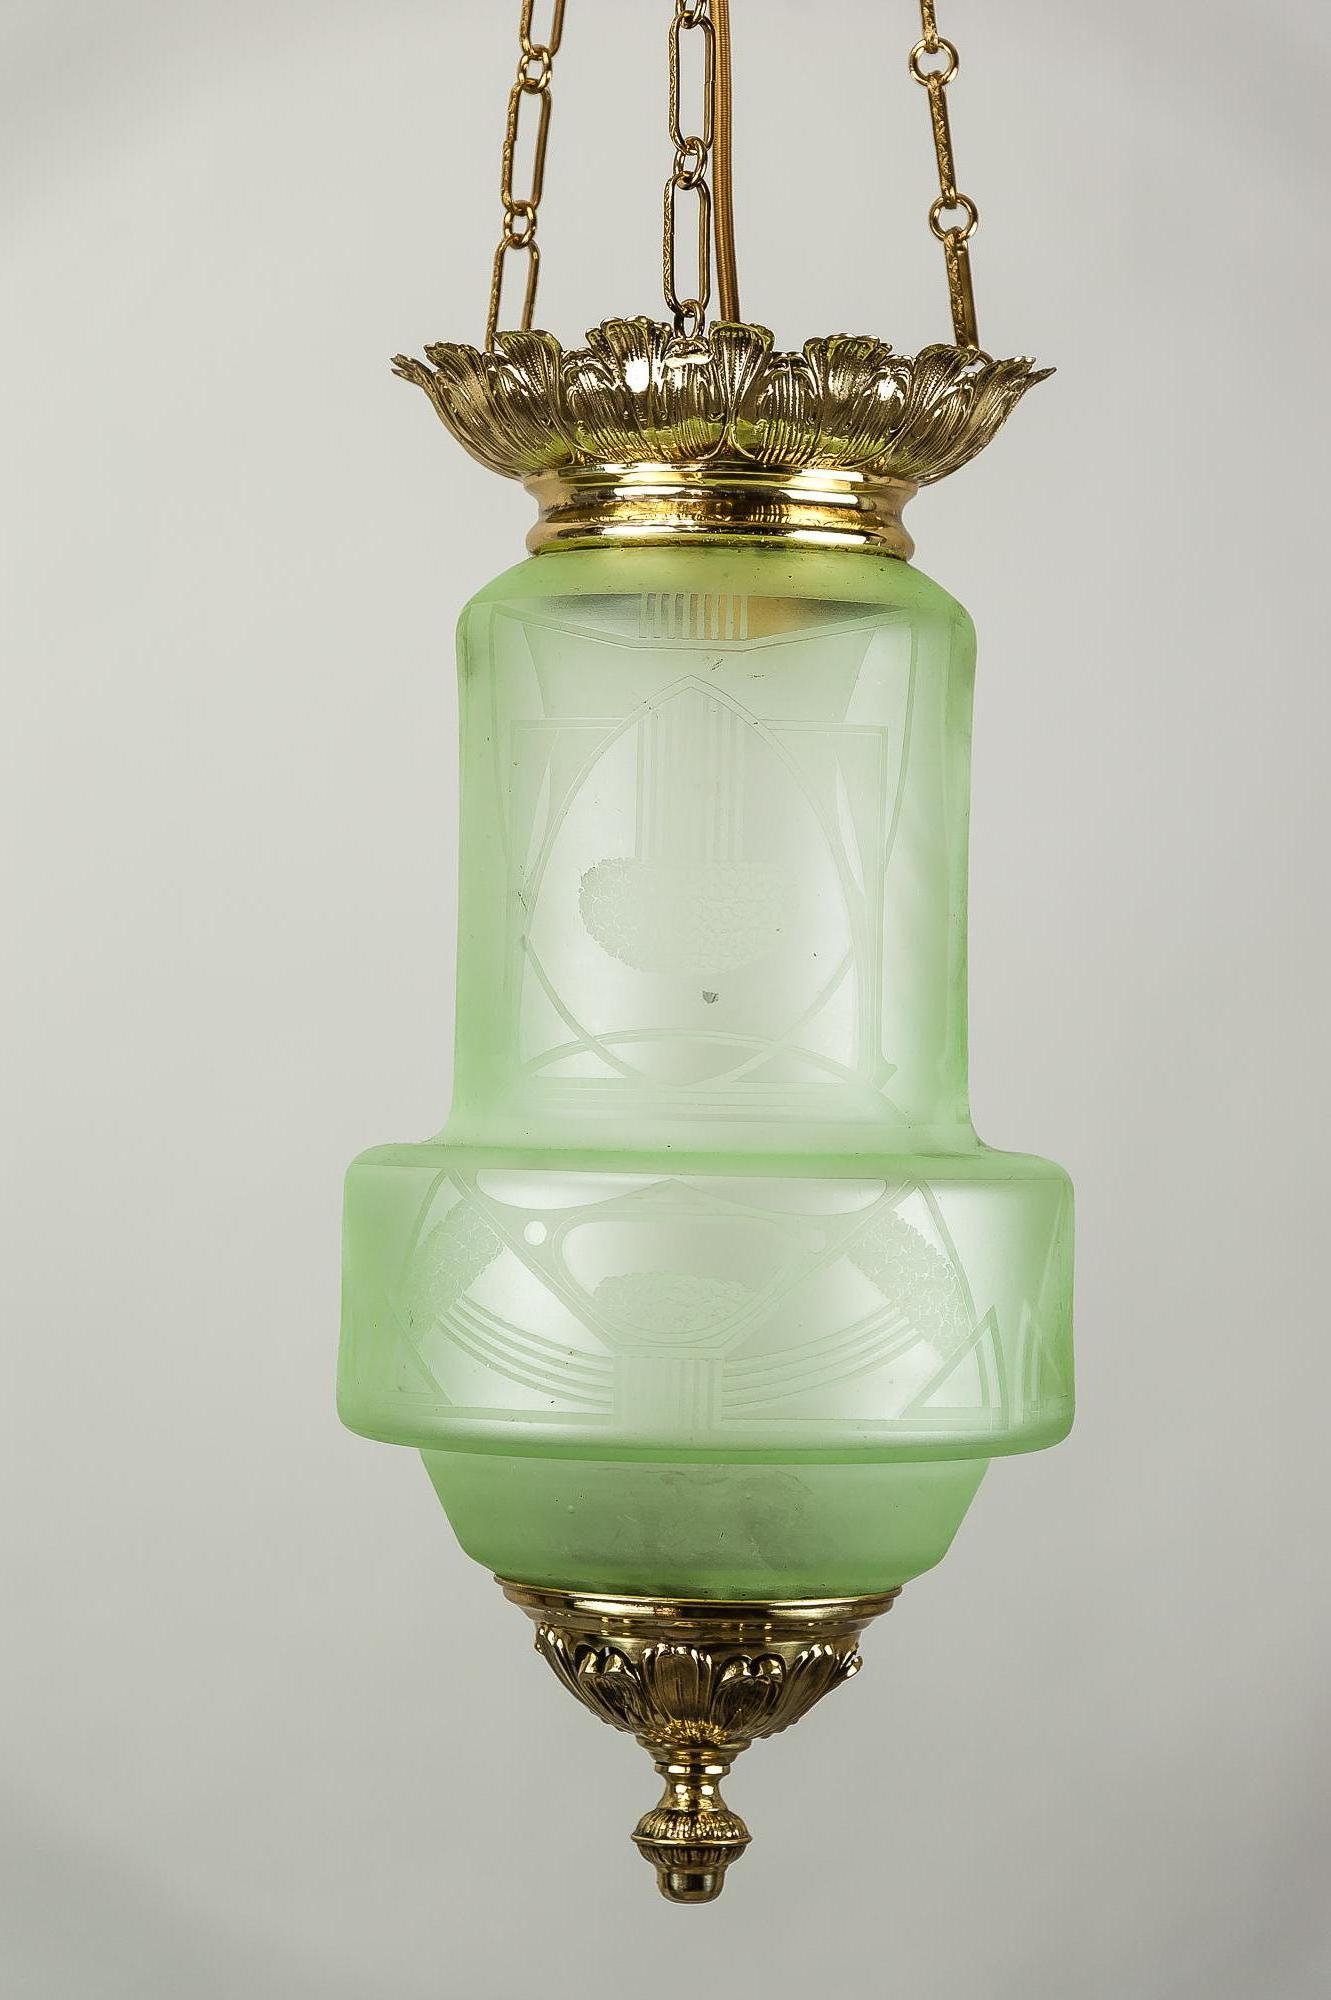 Jugendstil pendant with original glass, circa 1900s.
Polished and stove enamelled.